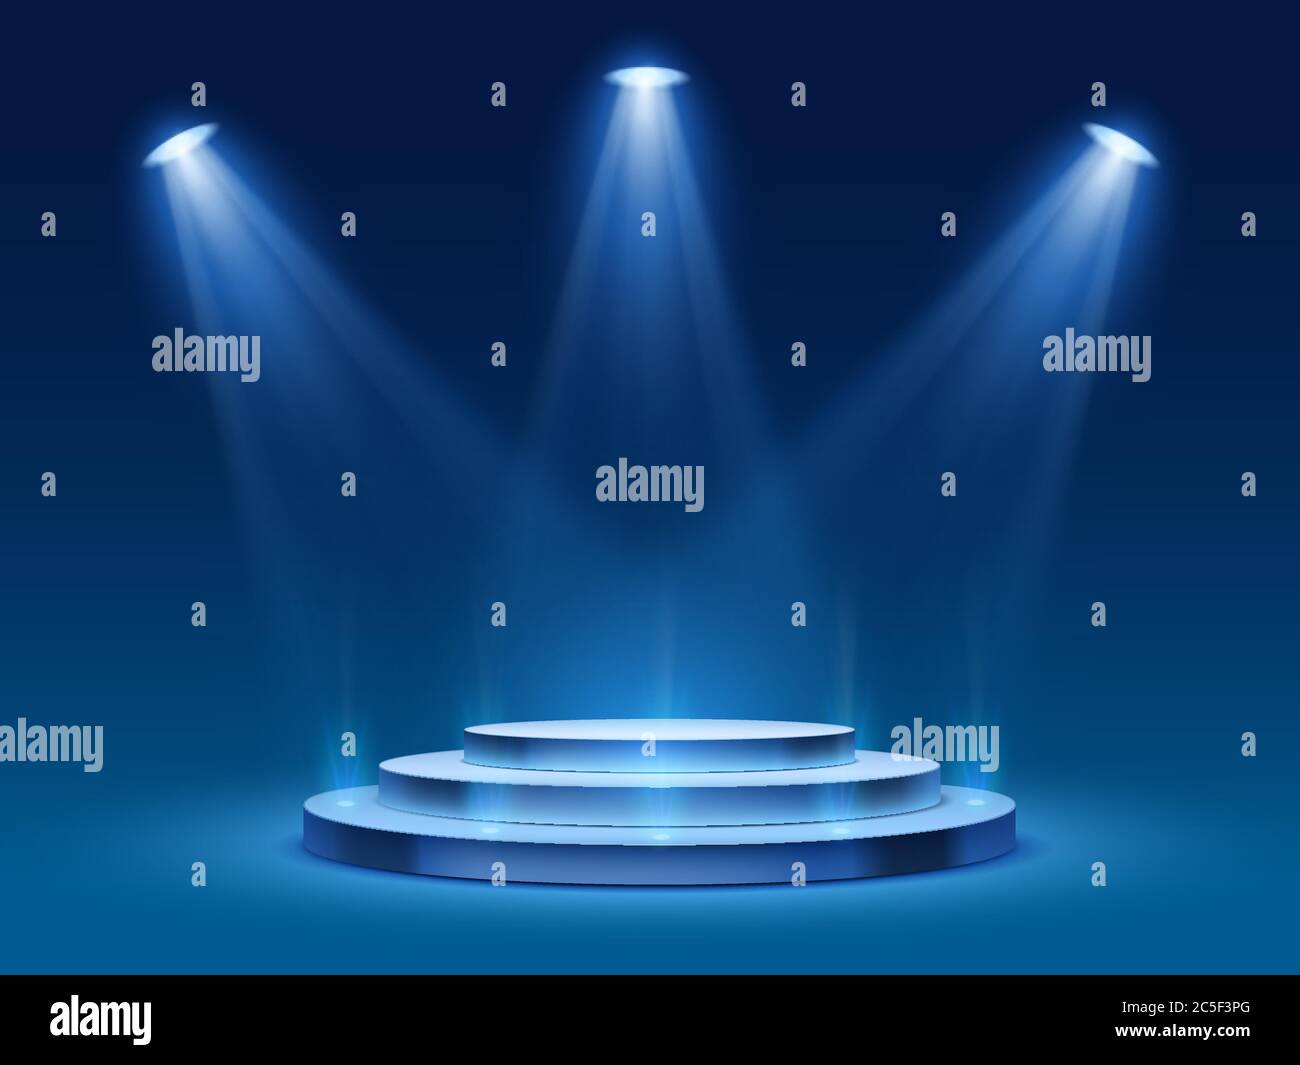 Scena podio con luce blu. Palco con illuminazione per premiazione, piedistallo illuminato per presentazioni, immagine vettoriale Illustrazione Vettoriale